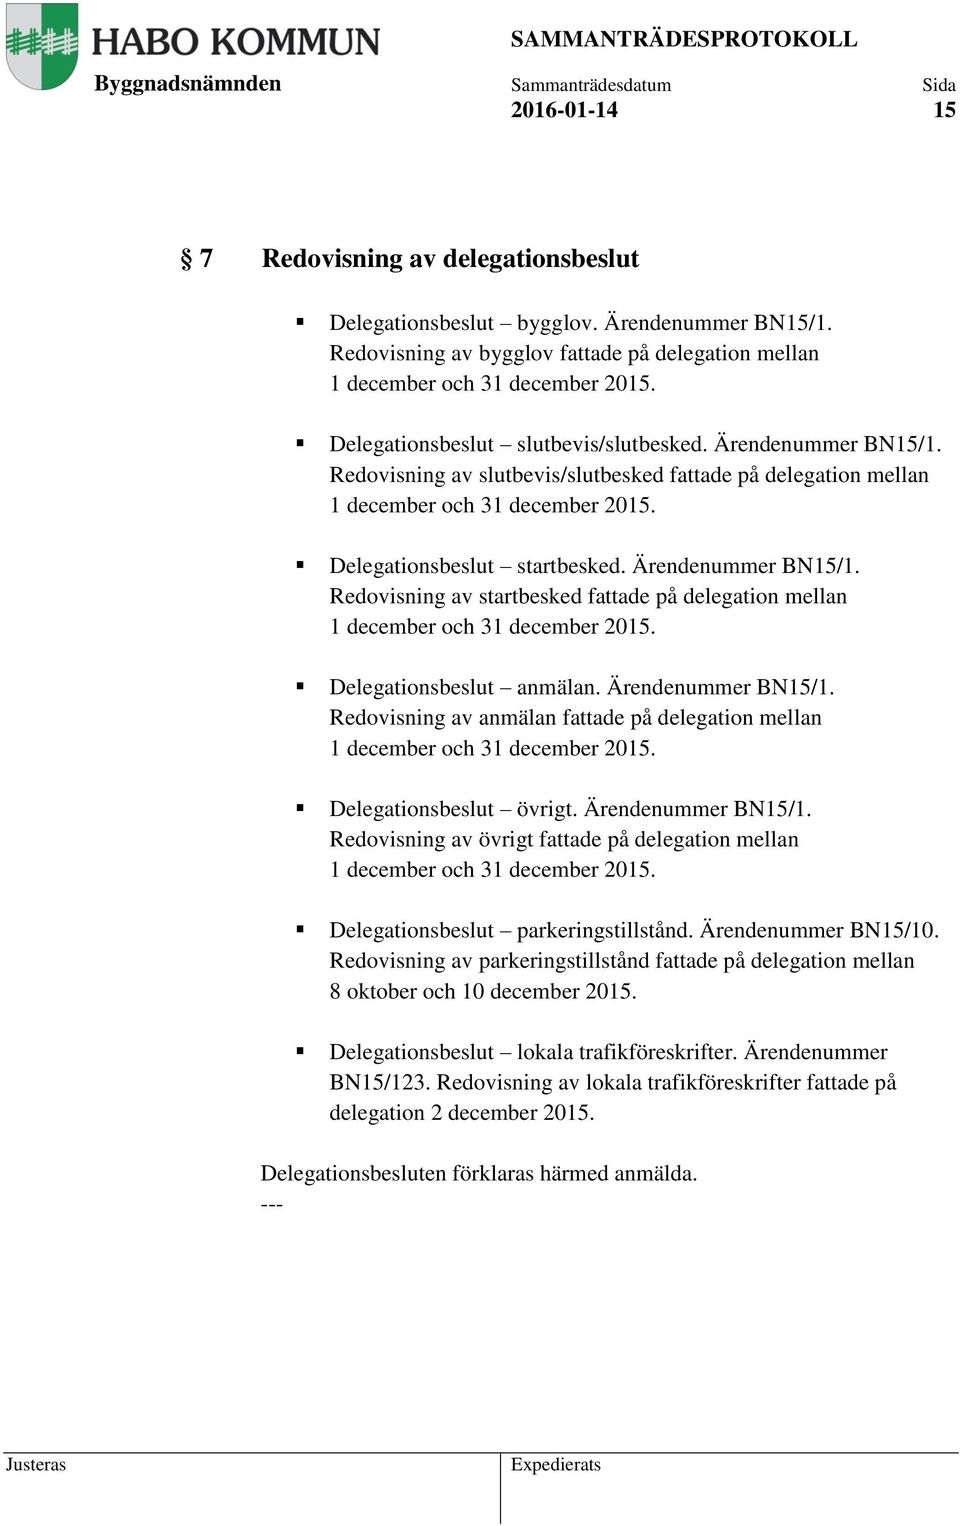 Ärendenummer BN15/1. Redovisning av startbesked fattade på delegation mellan 1 december och 31 december 2015. Delegationsbeslut anmälan. Ärendenummer BN15/1.